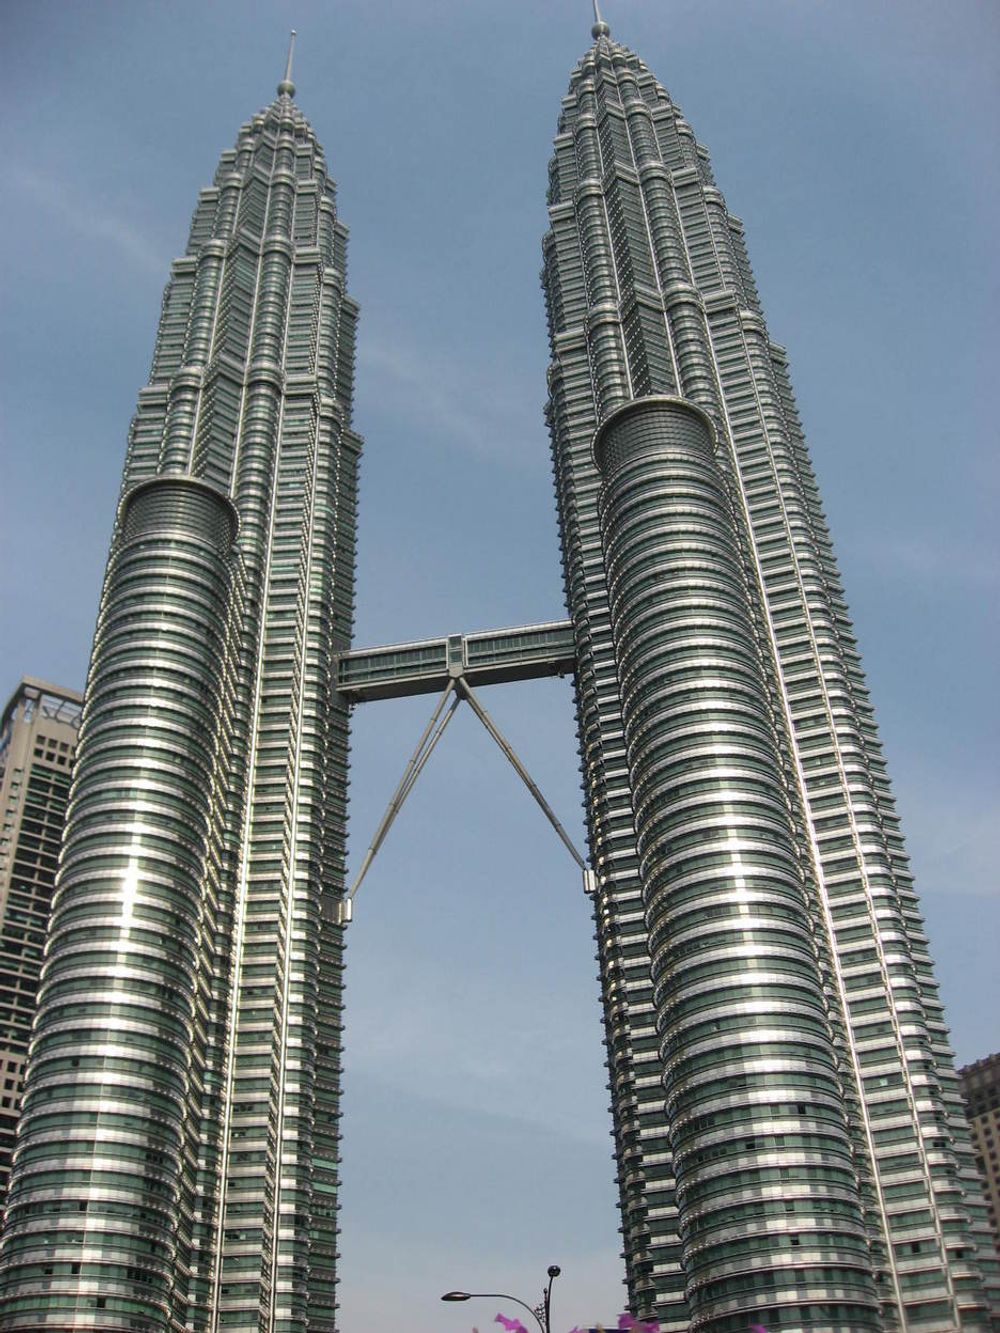 Petronas Twin Towers i Malaysias hovedstad Kuala Lumpur er verdens høyeste tvillingtårn  med sine 452 meter . Byggene ble ferdig i 1998 og huser blant annet det statlige oljeselskapet Petronas. Publikum har tilgang opp til brua som forbinder de to tårnene vel 150 oppe.